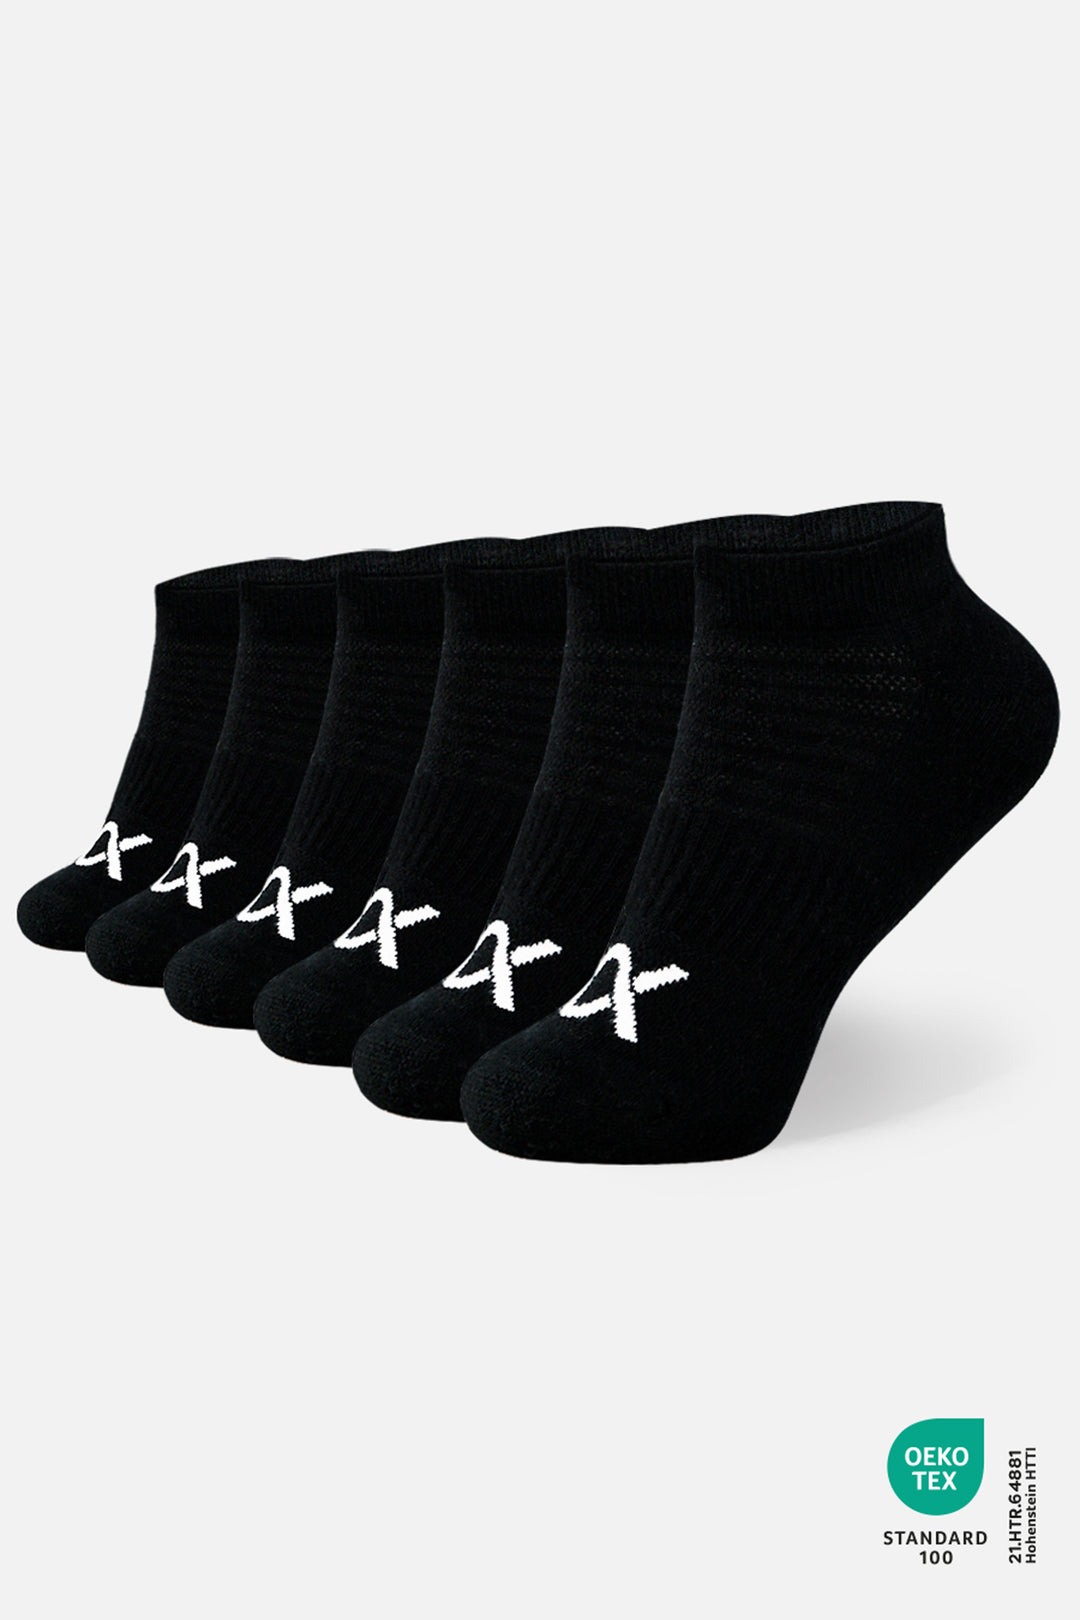 DIXXSON Sneaker Socken - schwarz - 6er Pack - Unisex für Damen und Herren